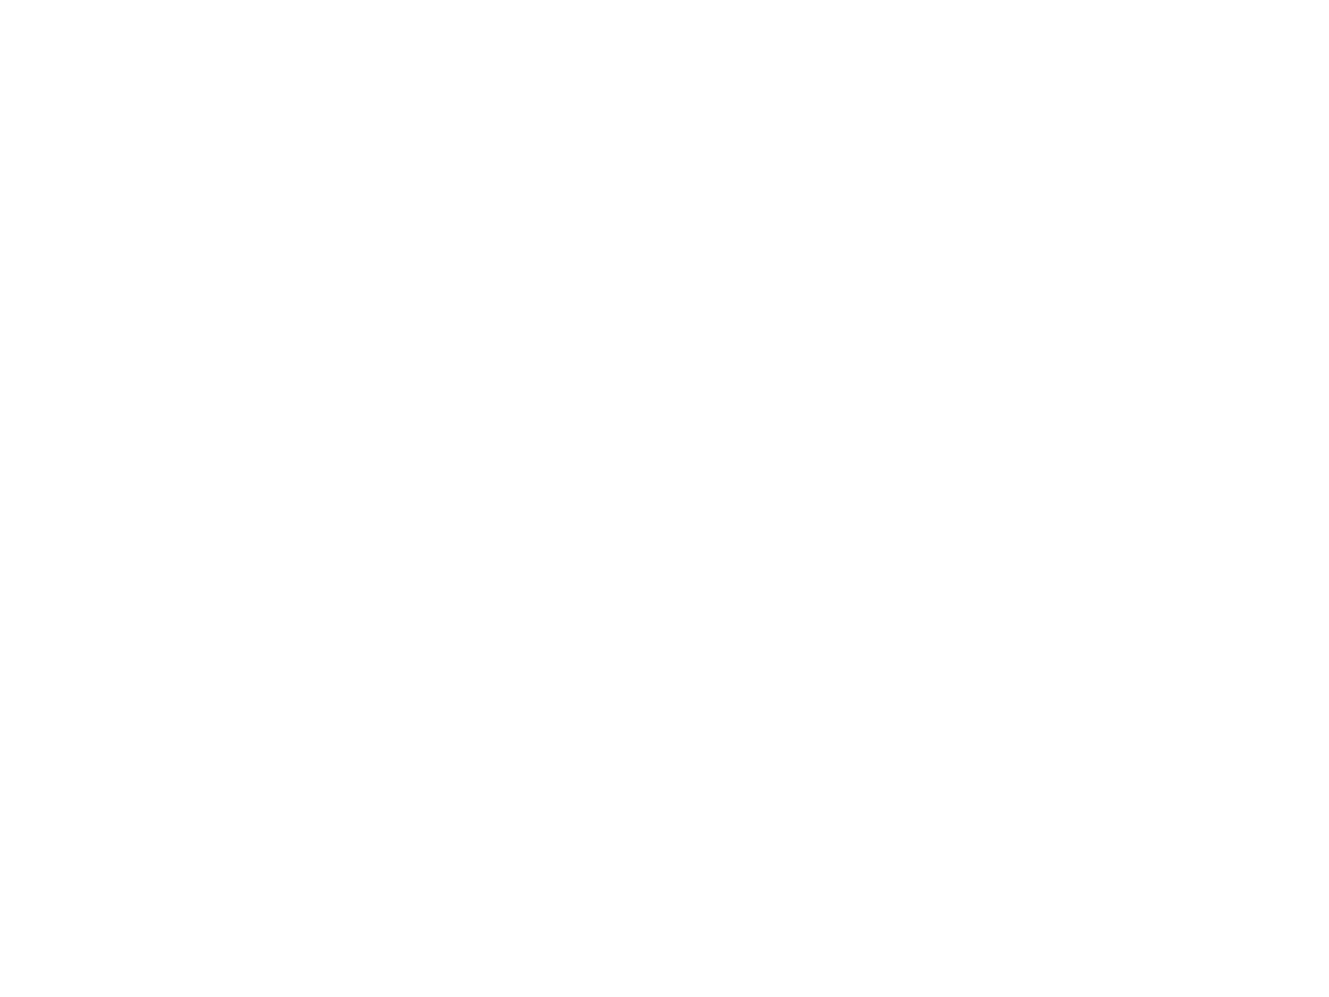 Southfields